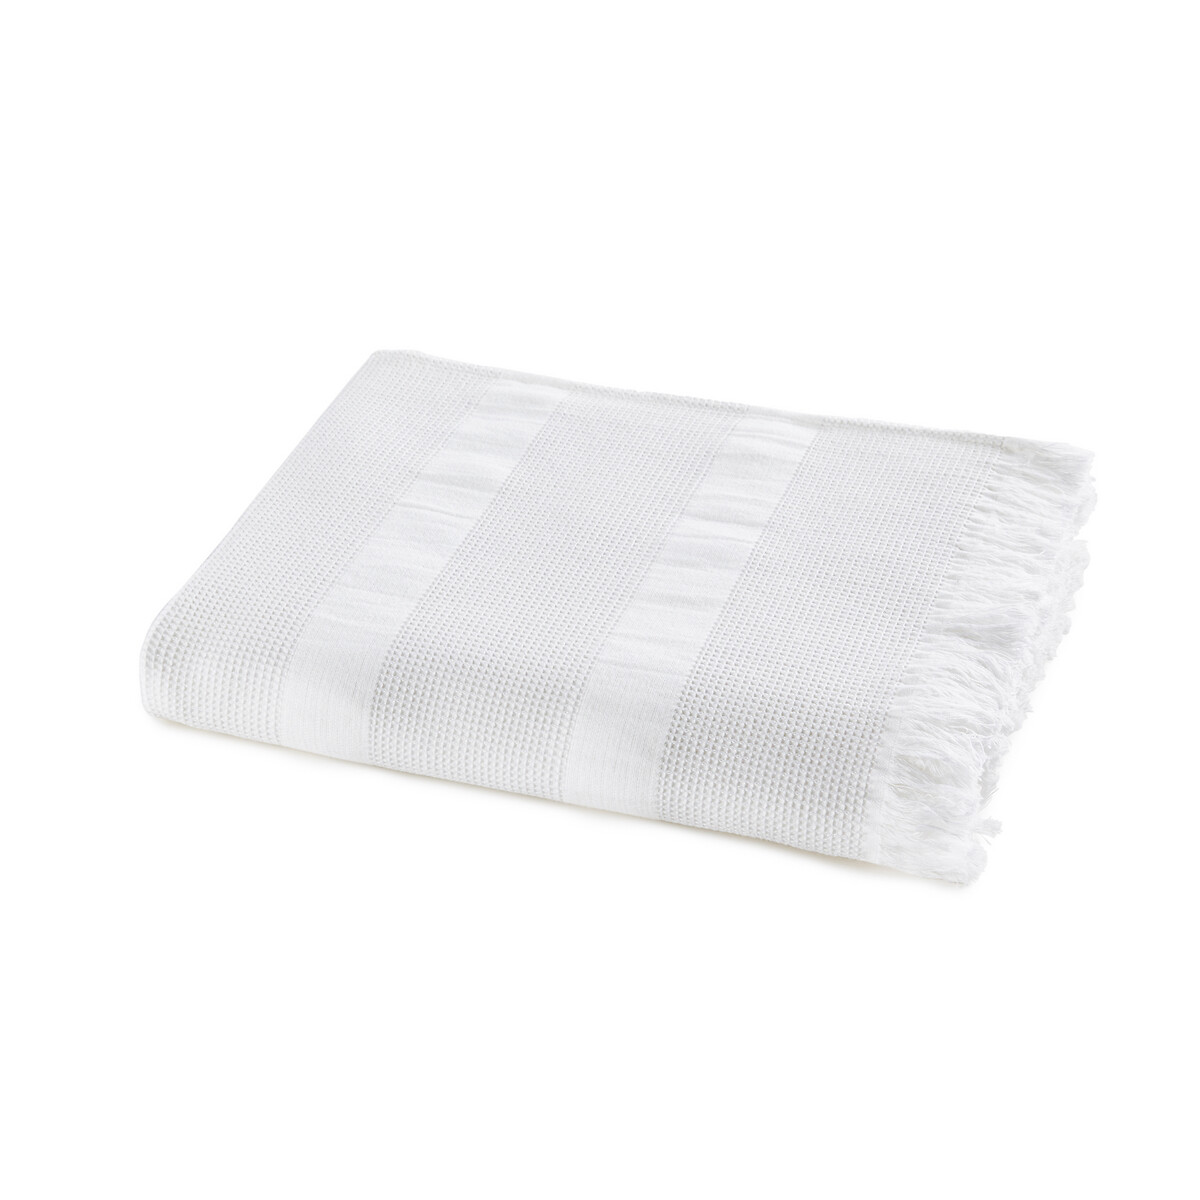 Полотенце LaRedoute Банное из вафельной ткани Phidae 85 x 140 см белый, размер 85 x 140 см